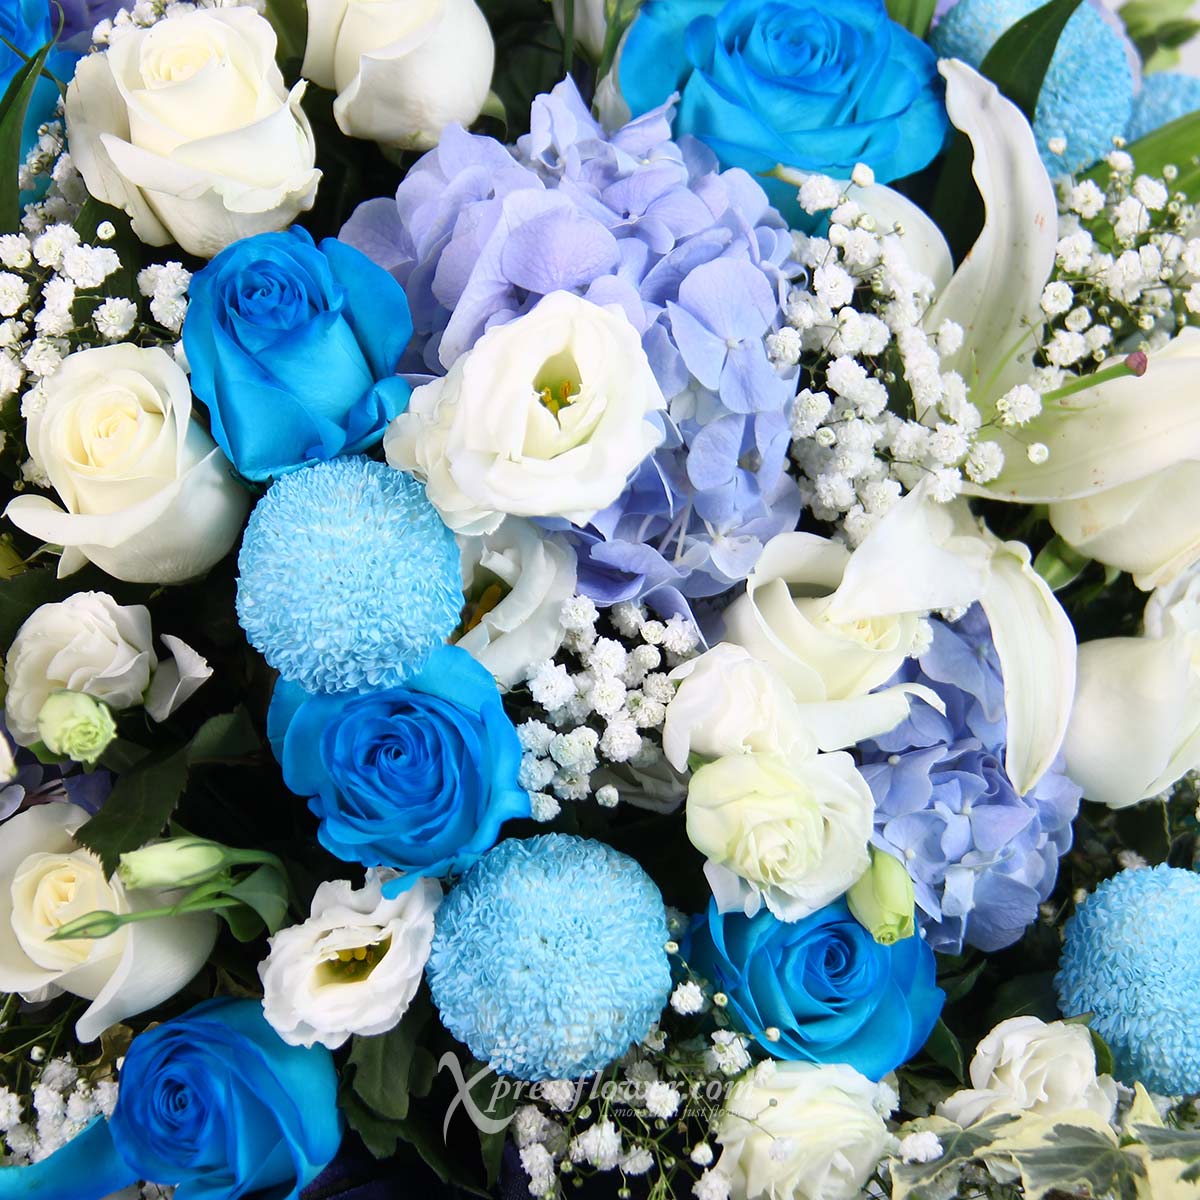 AR2121 Grand Ultramarine blue roses white roses 1c